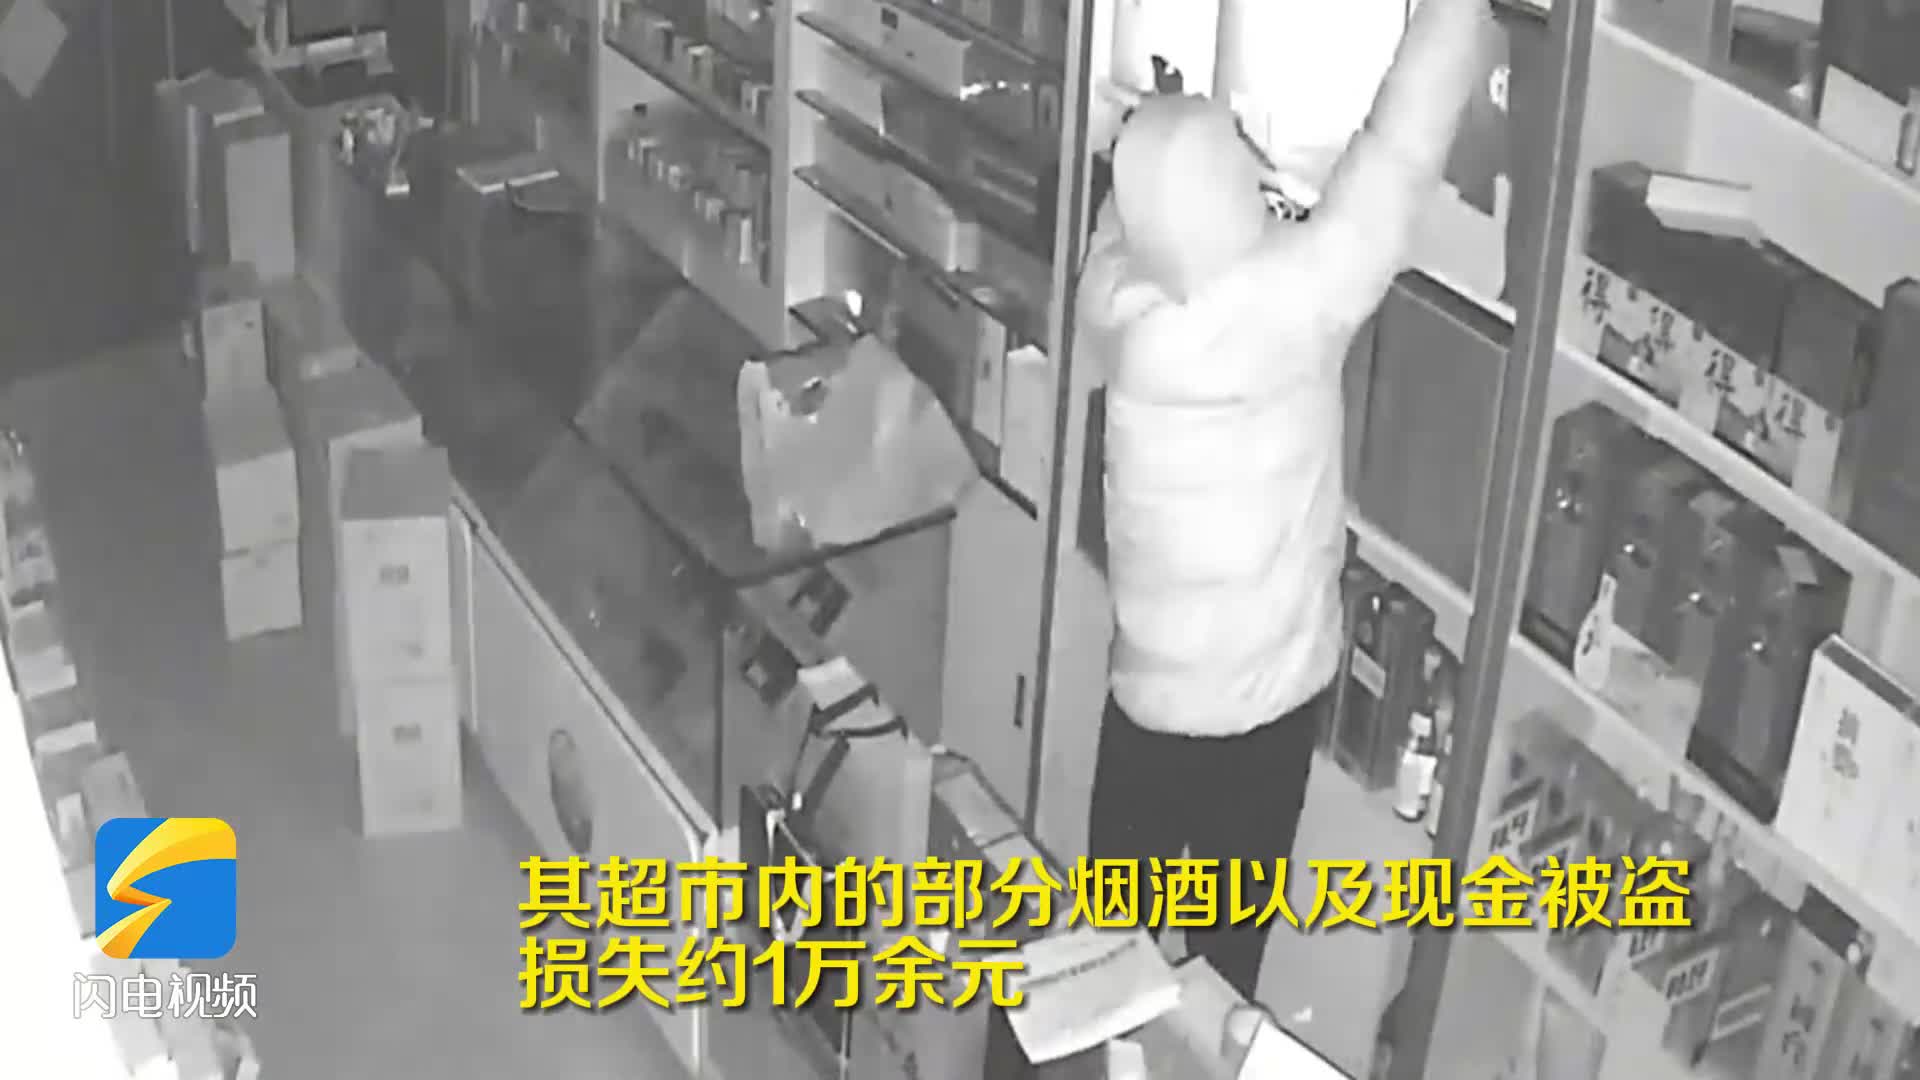 济南一男子盗窃邻居店铺 仅过24小时就被抓